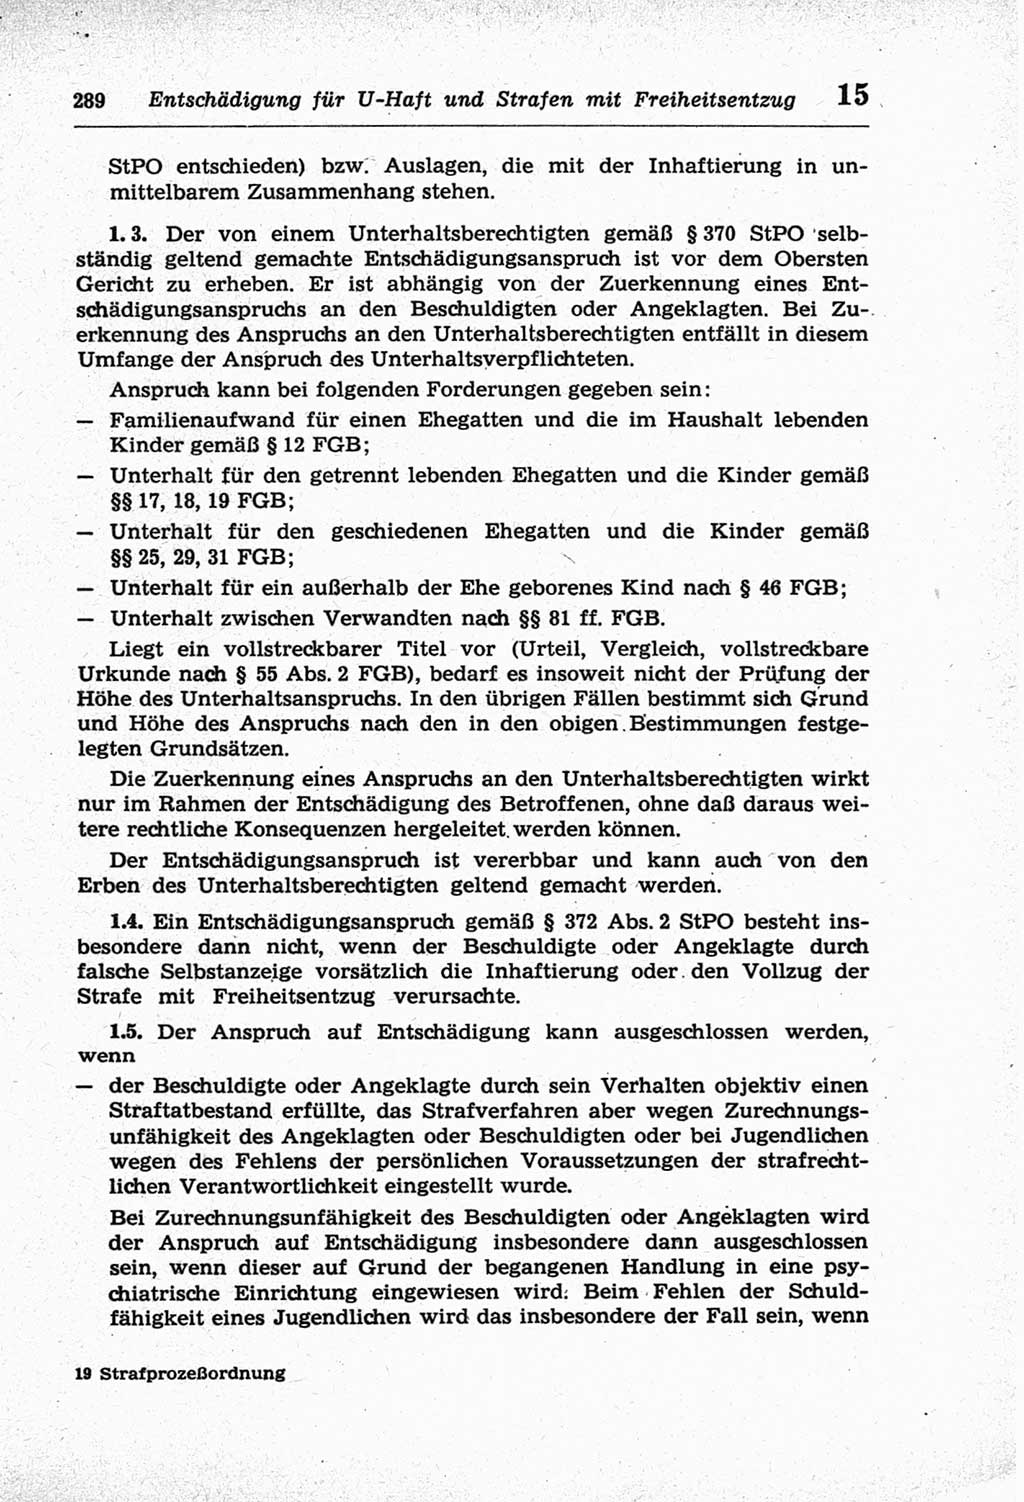 Strafprozeßordnung (StPO) der Deutschen Demokratischen Republik (DDR) und angrenzende Gesetze und Bestimmungen 1968, Seite 289 (StPO Ges. Bstgn. DDR 1968, S. 289)